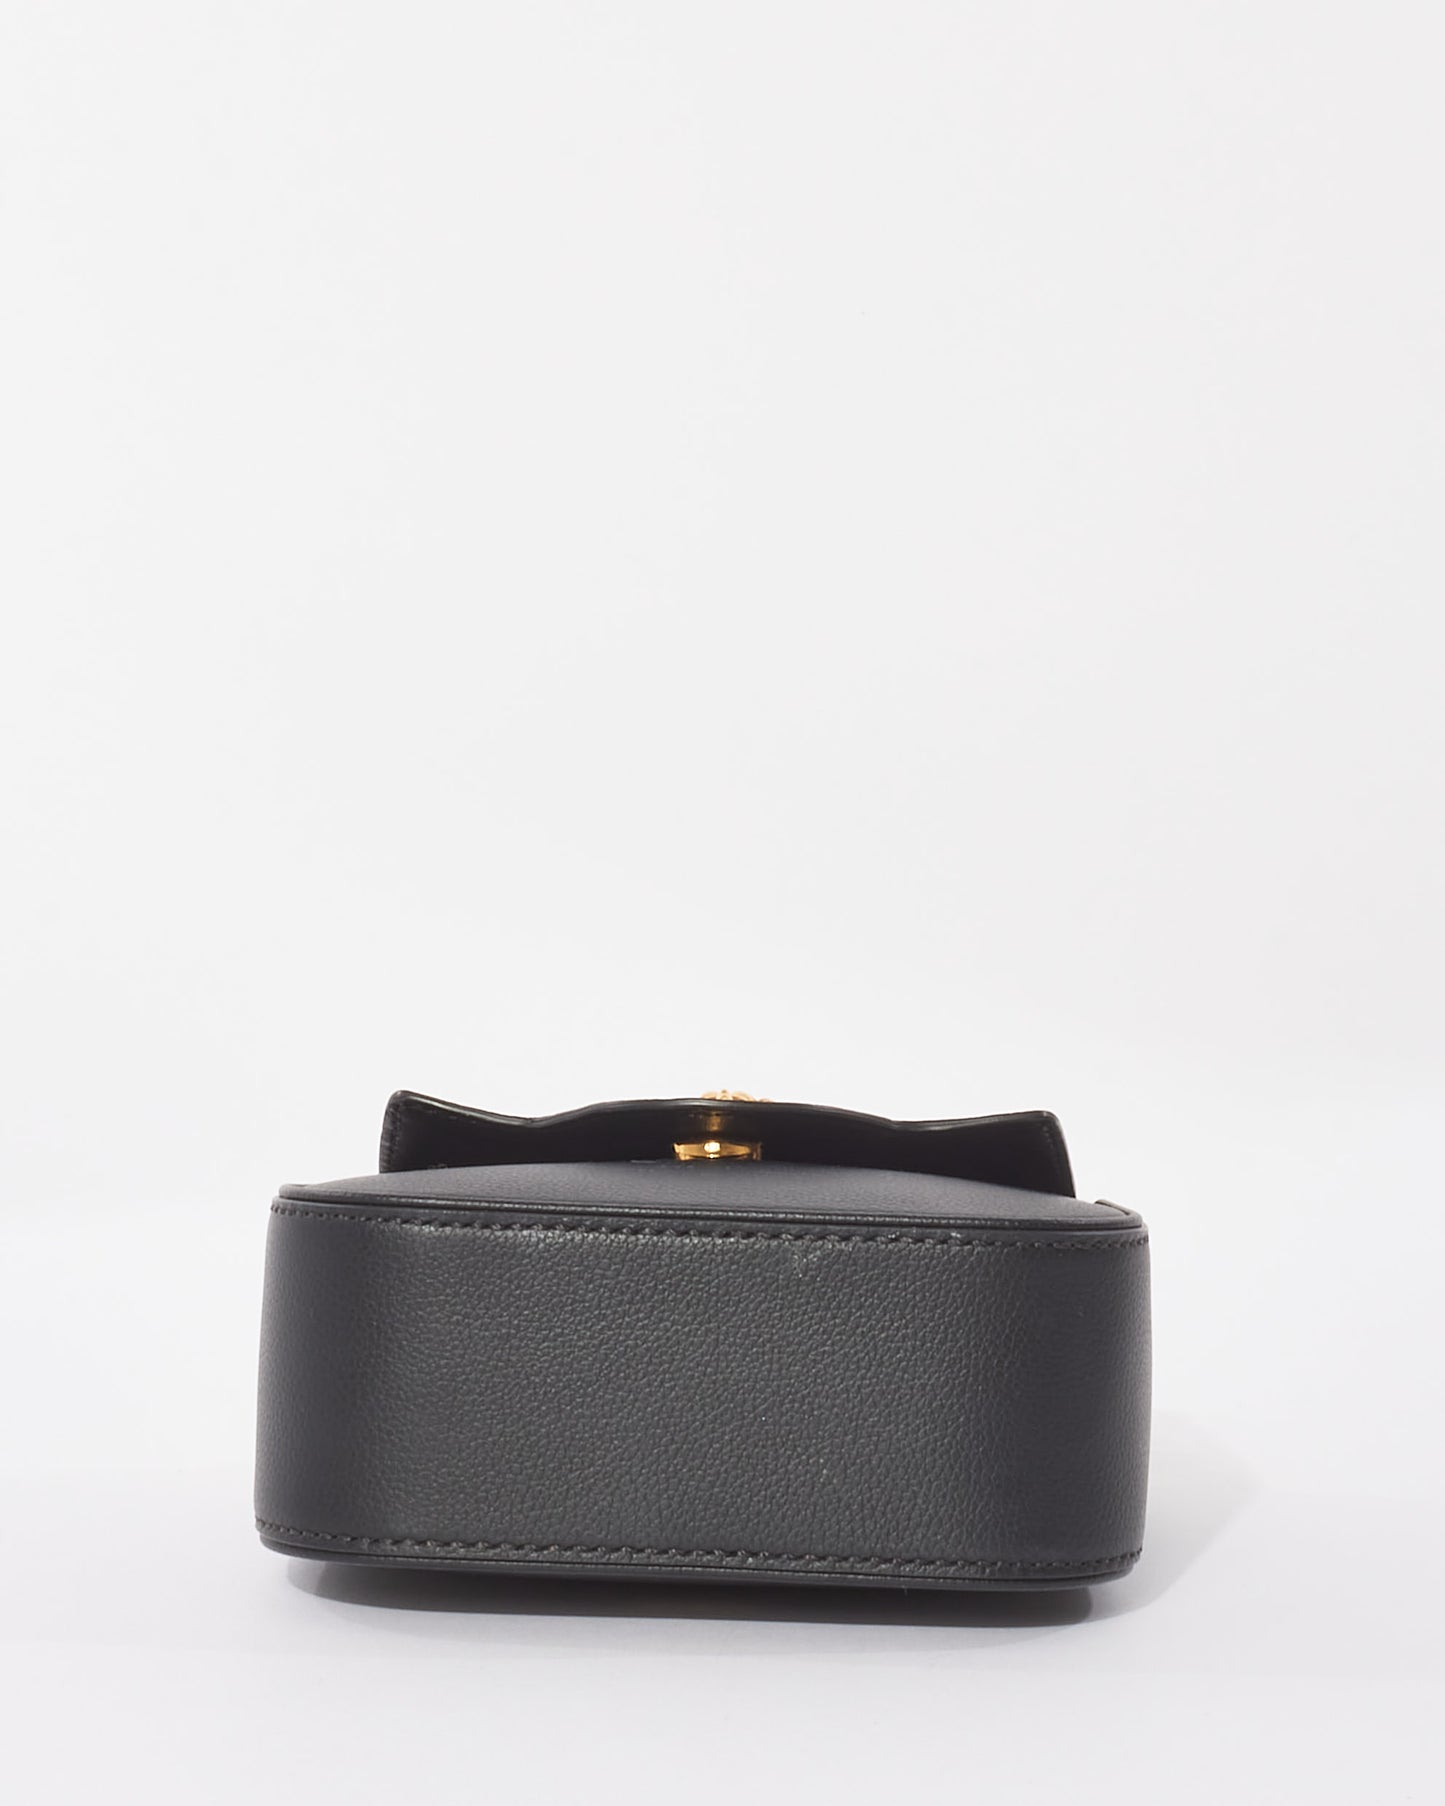 Versace Black Leather "La Medusa" Mini Bag